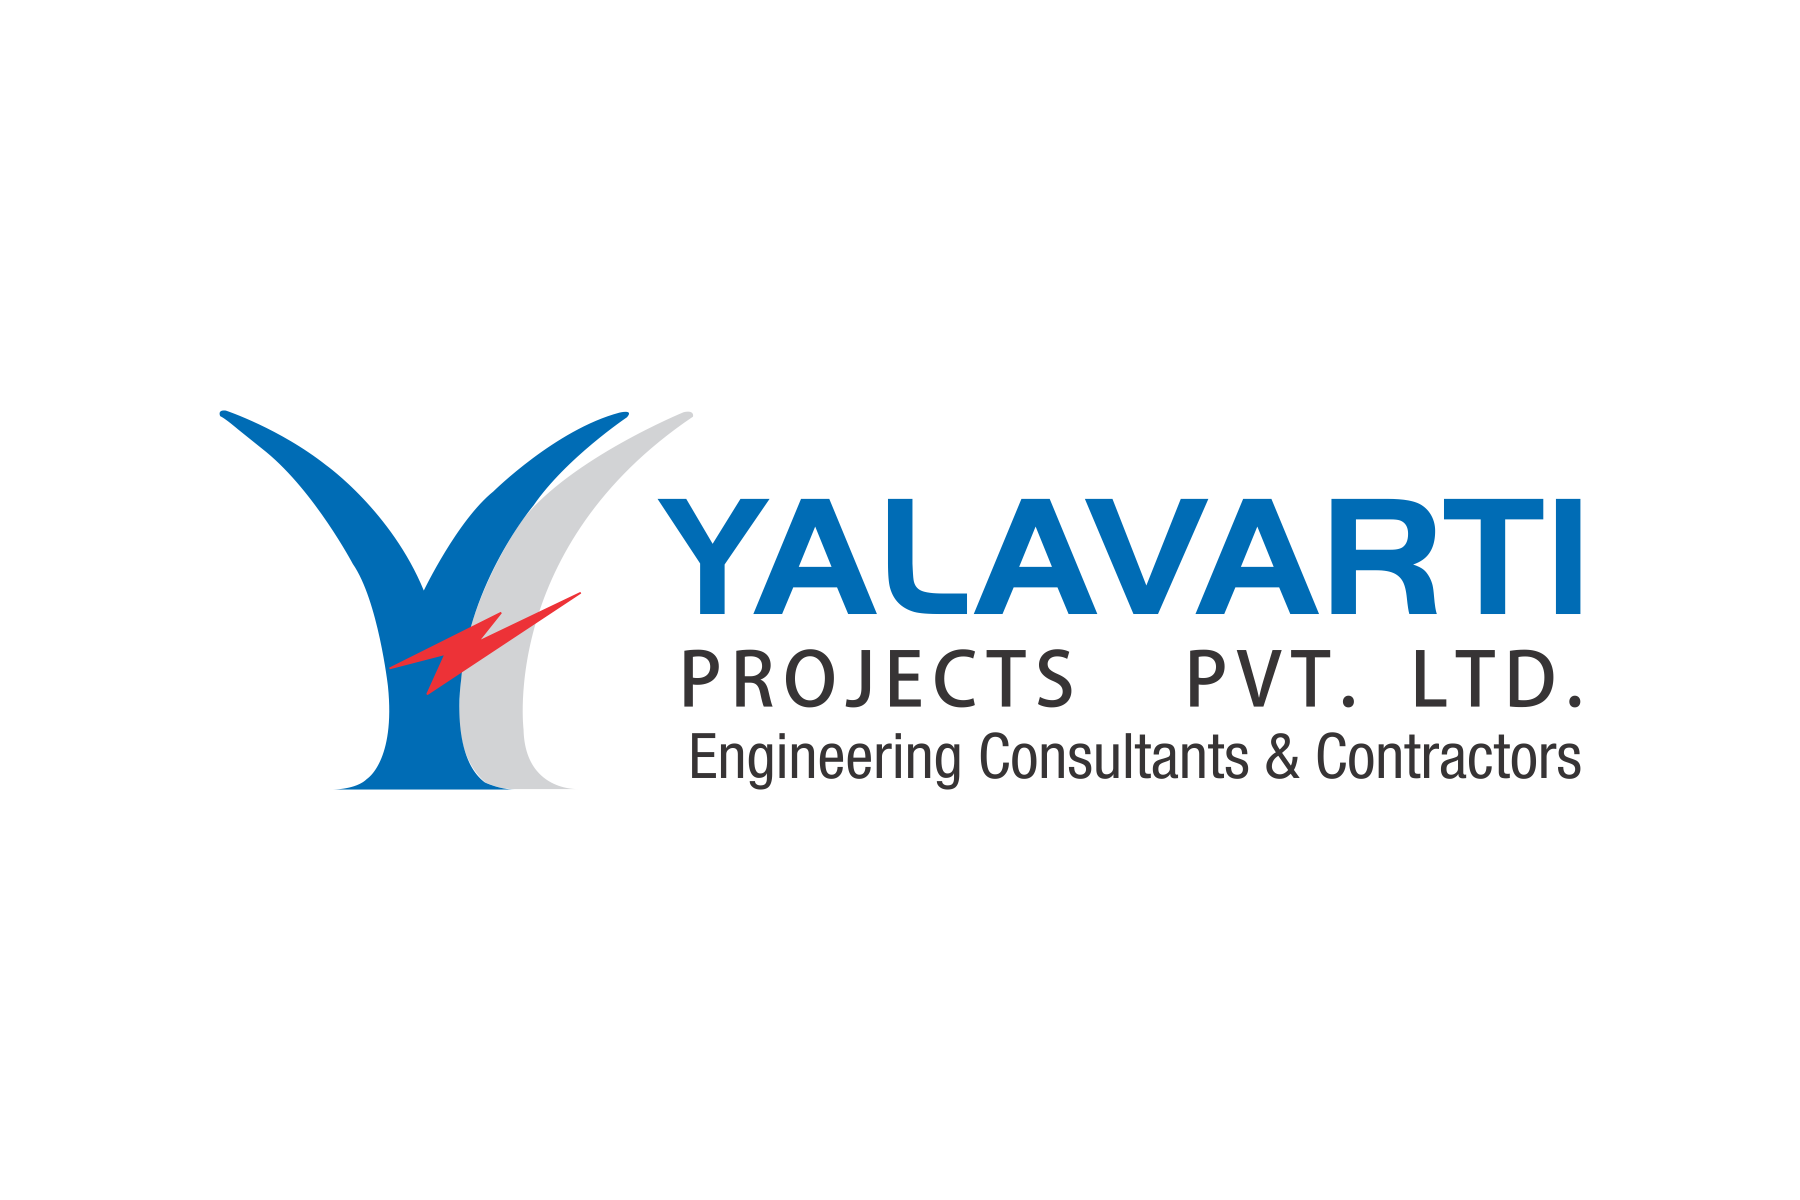 Yalavarti Projects PVT. Ltd.